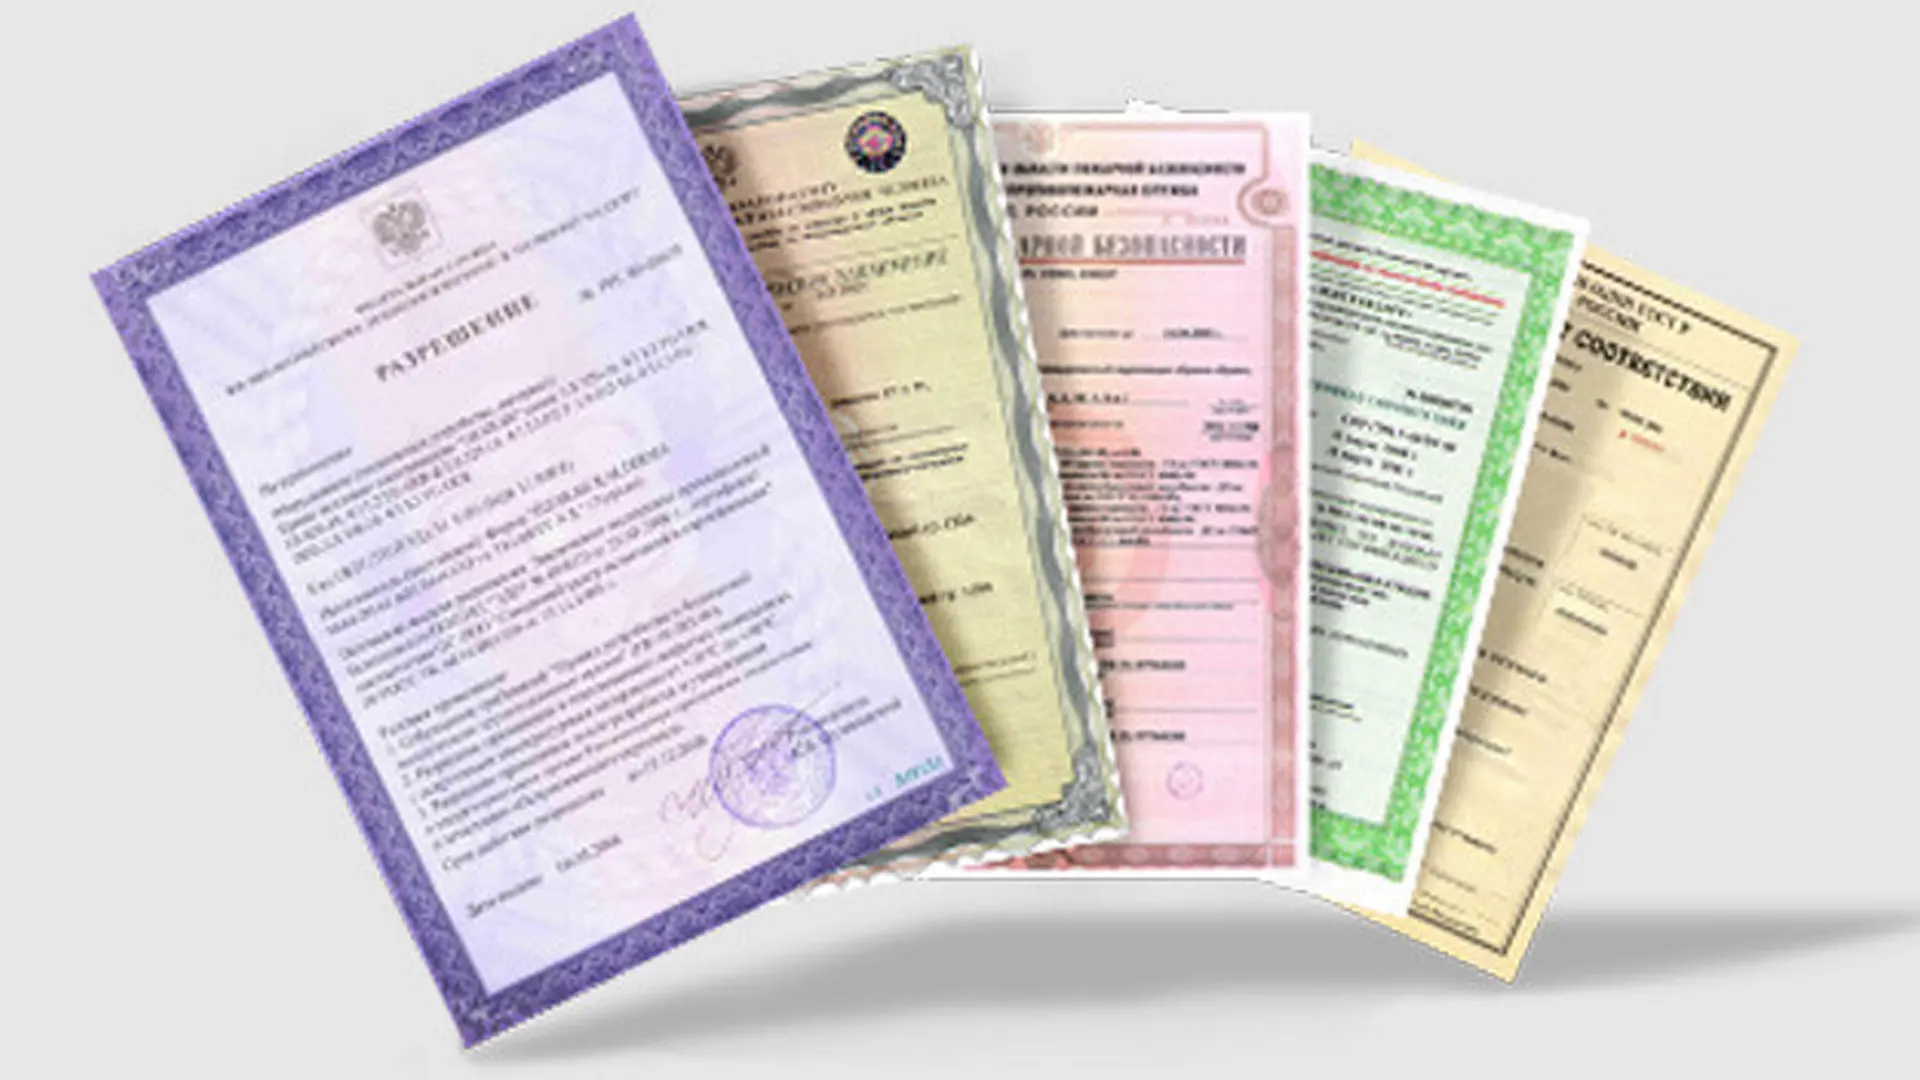 Сертификация в москве